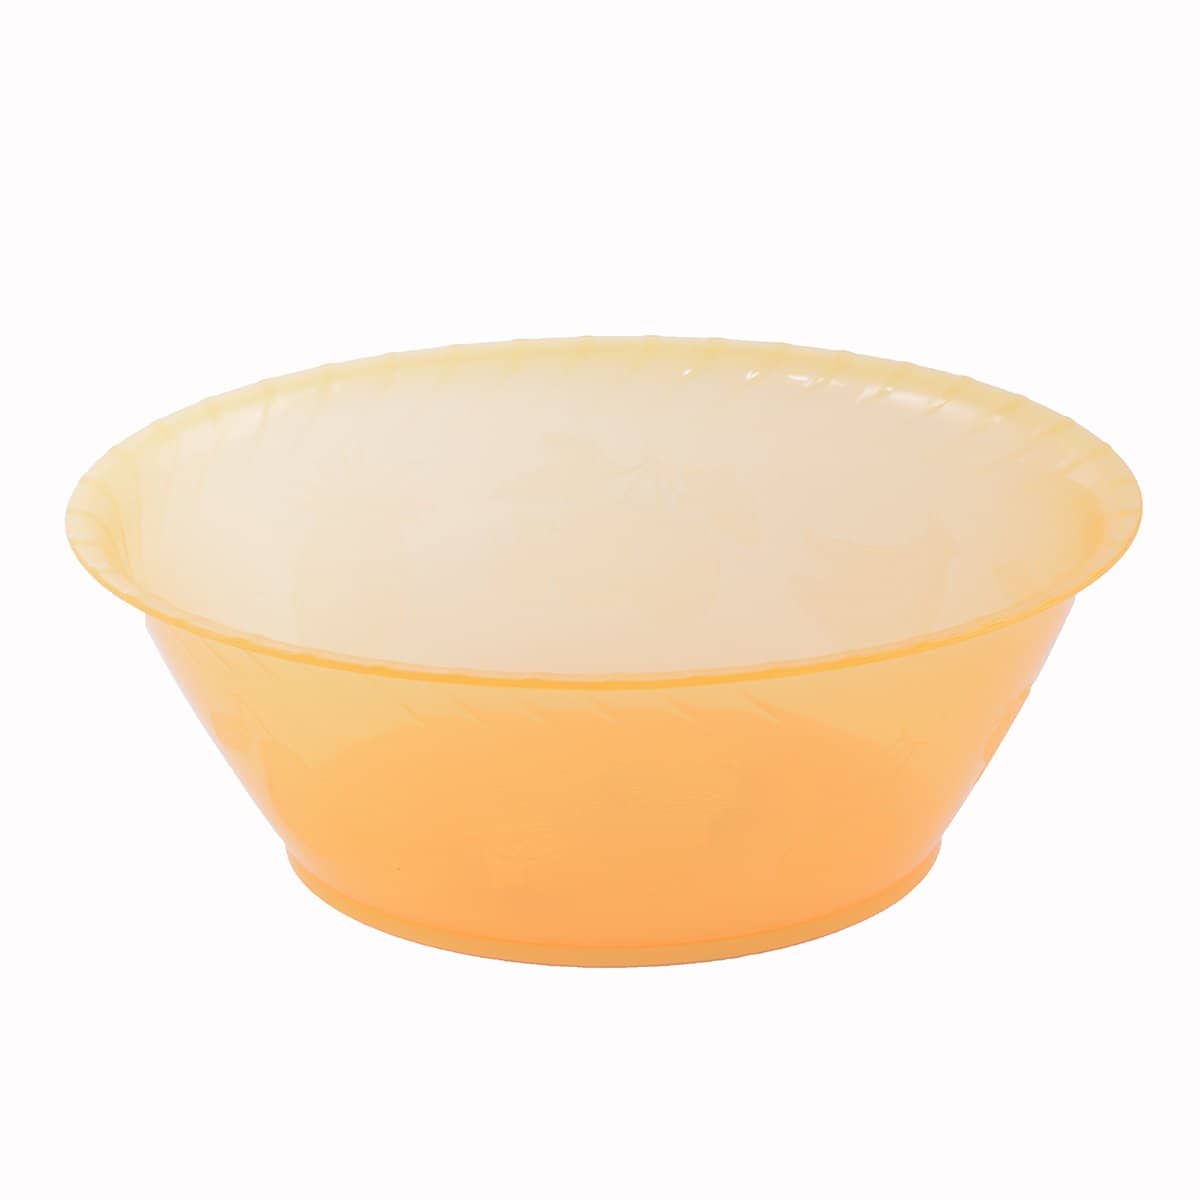 وعاء بيضاوي متوسط الحجم برتقالي 30-22 سم - أنية المنزل